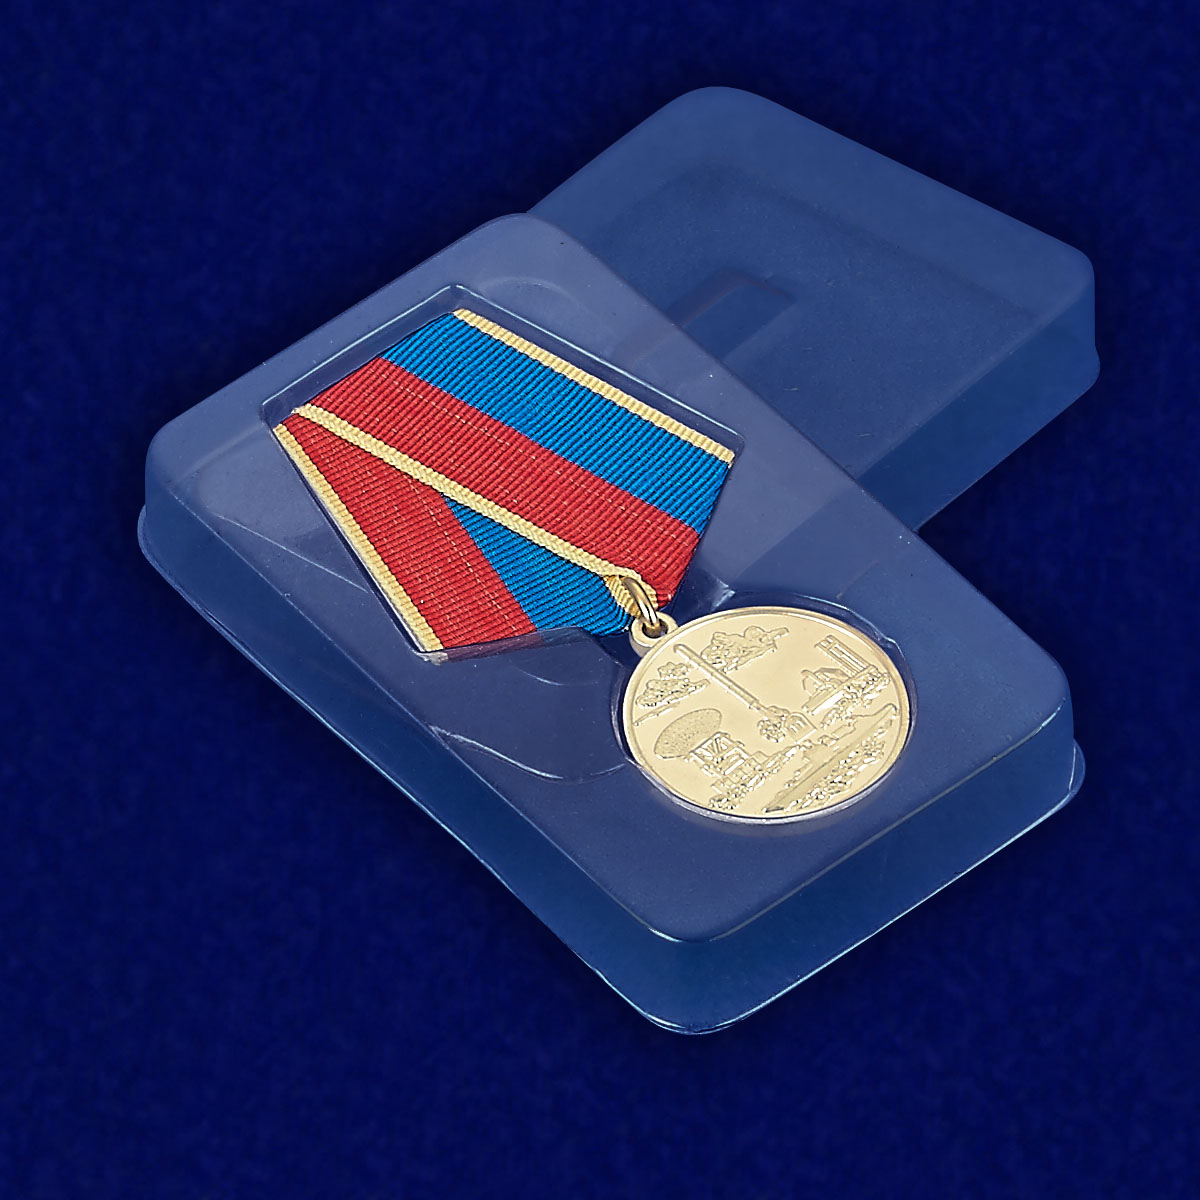 Медаль "За разработку систем вооружения" 